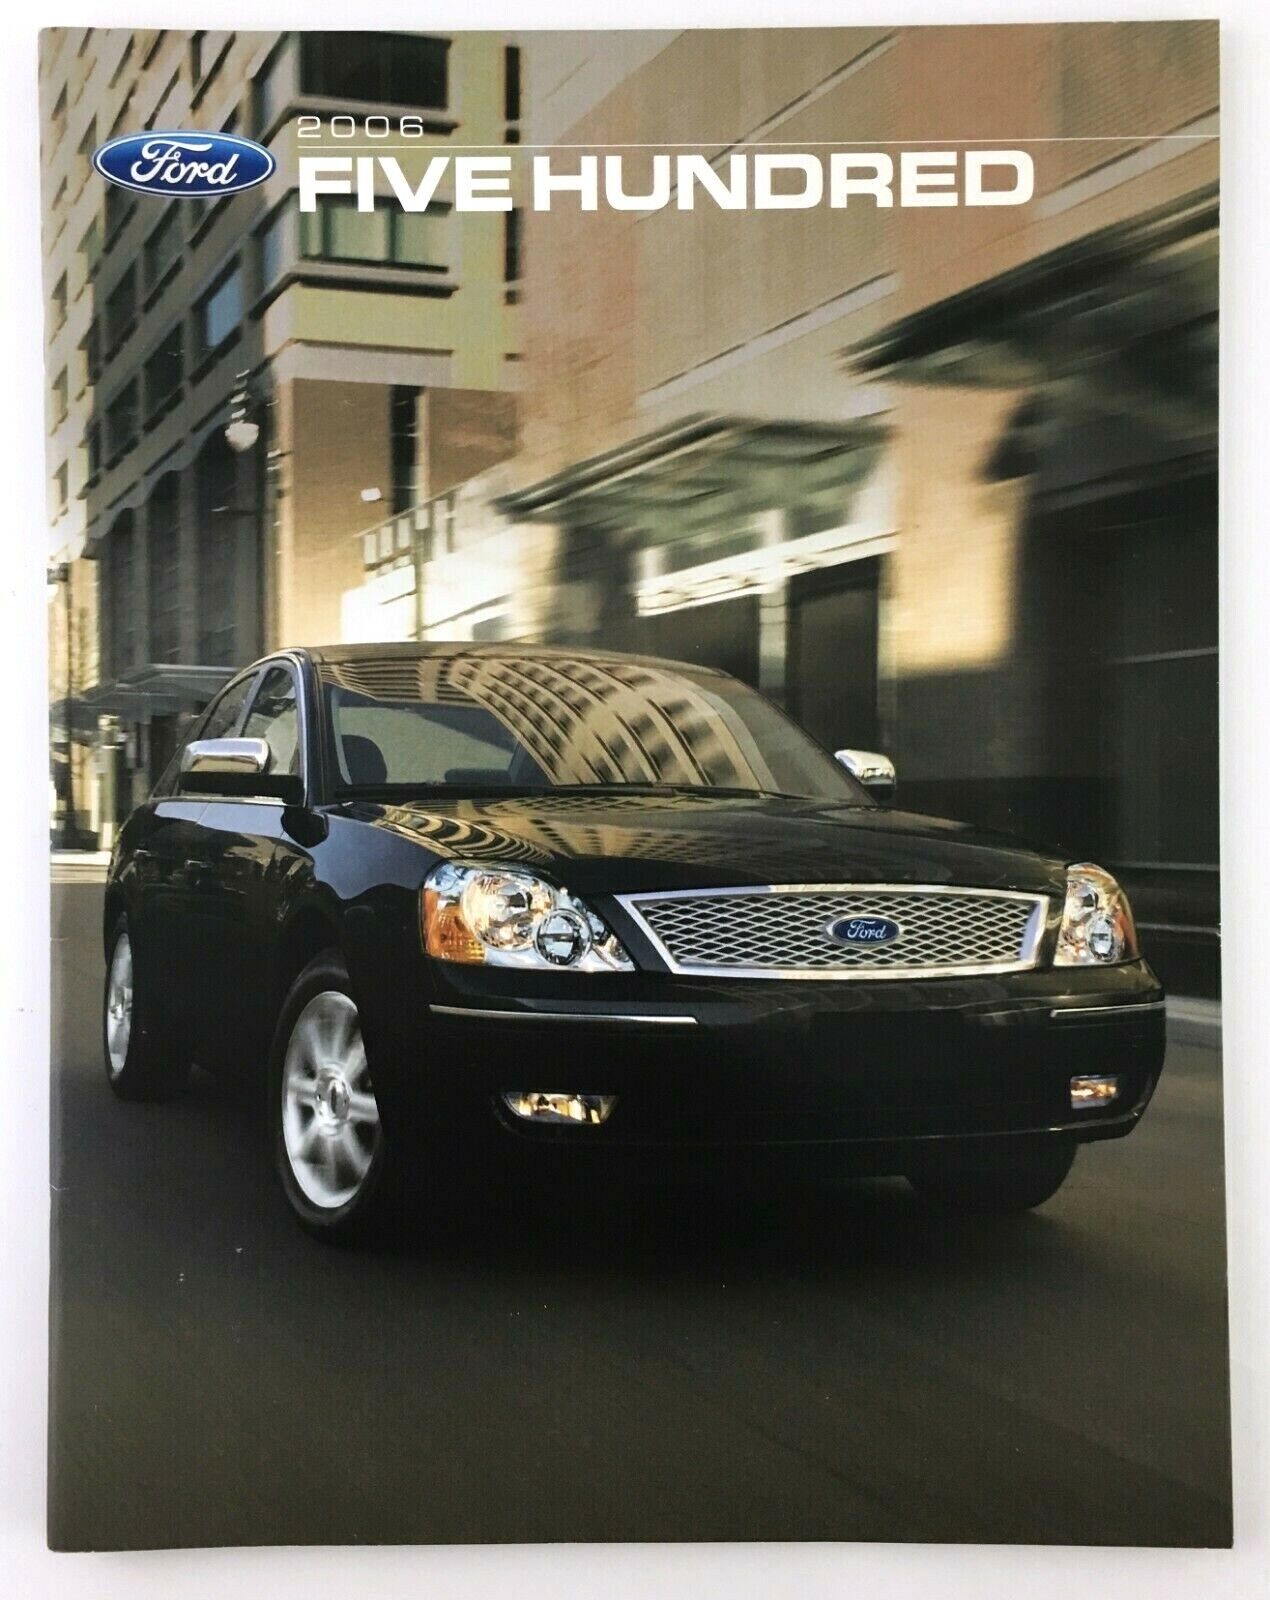 2006 Ford Five Hundred 500 Showroom Sales Booklet Dealership Catalog Auto Vtg